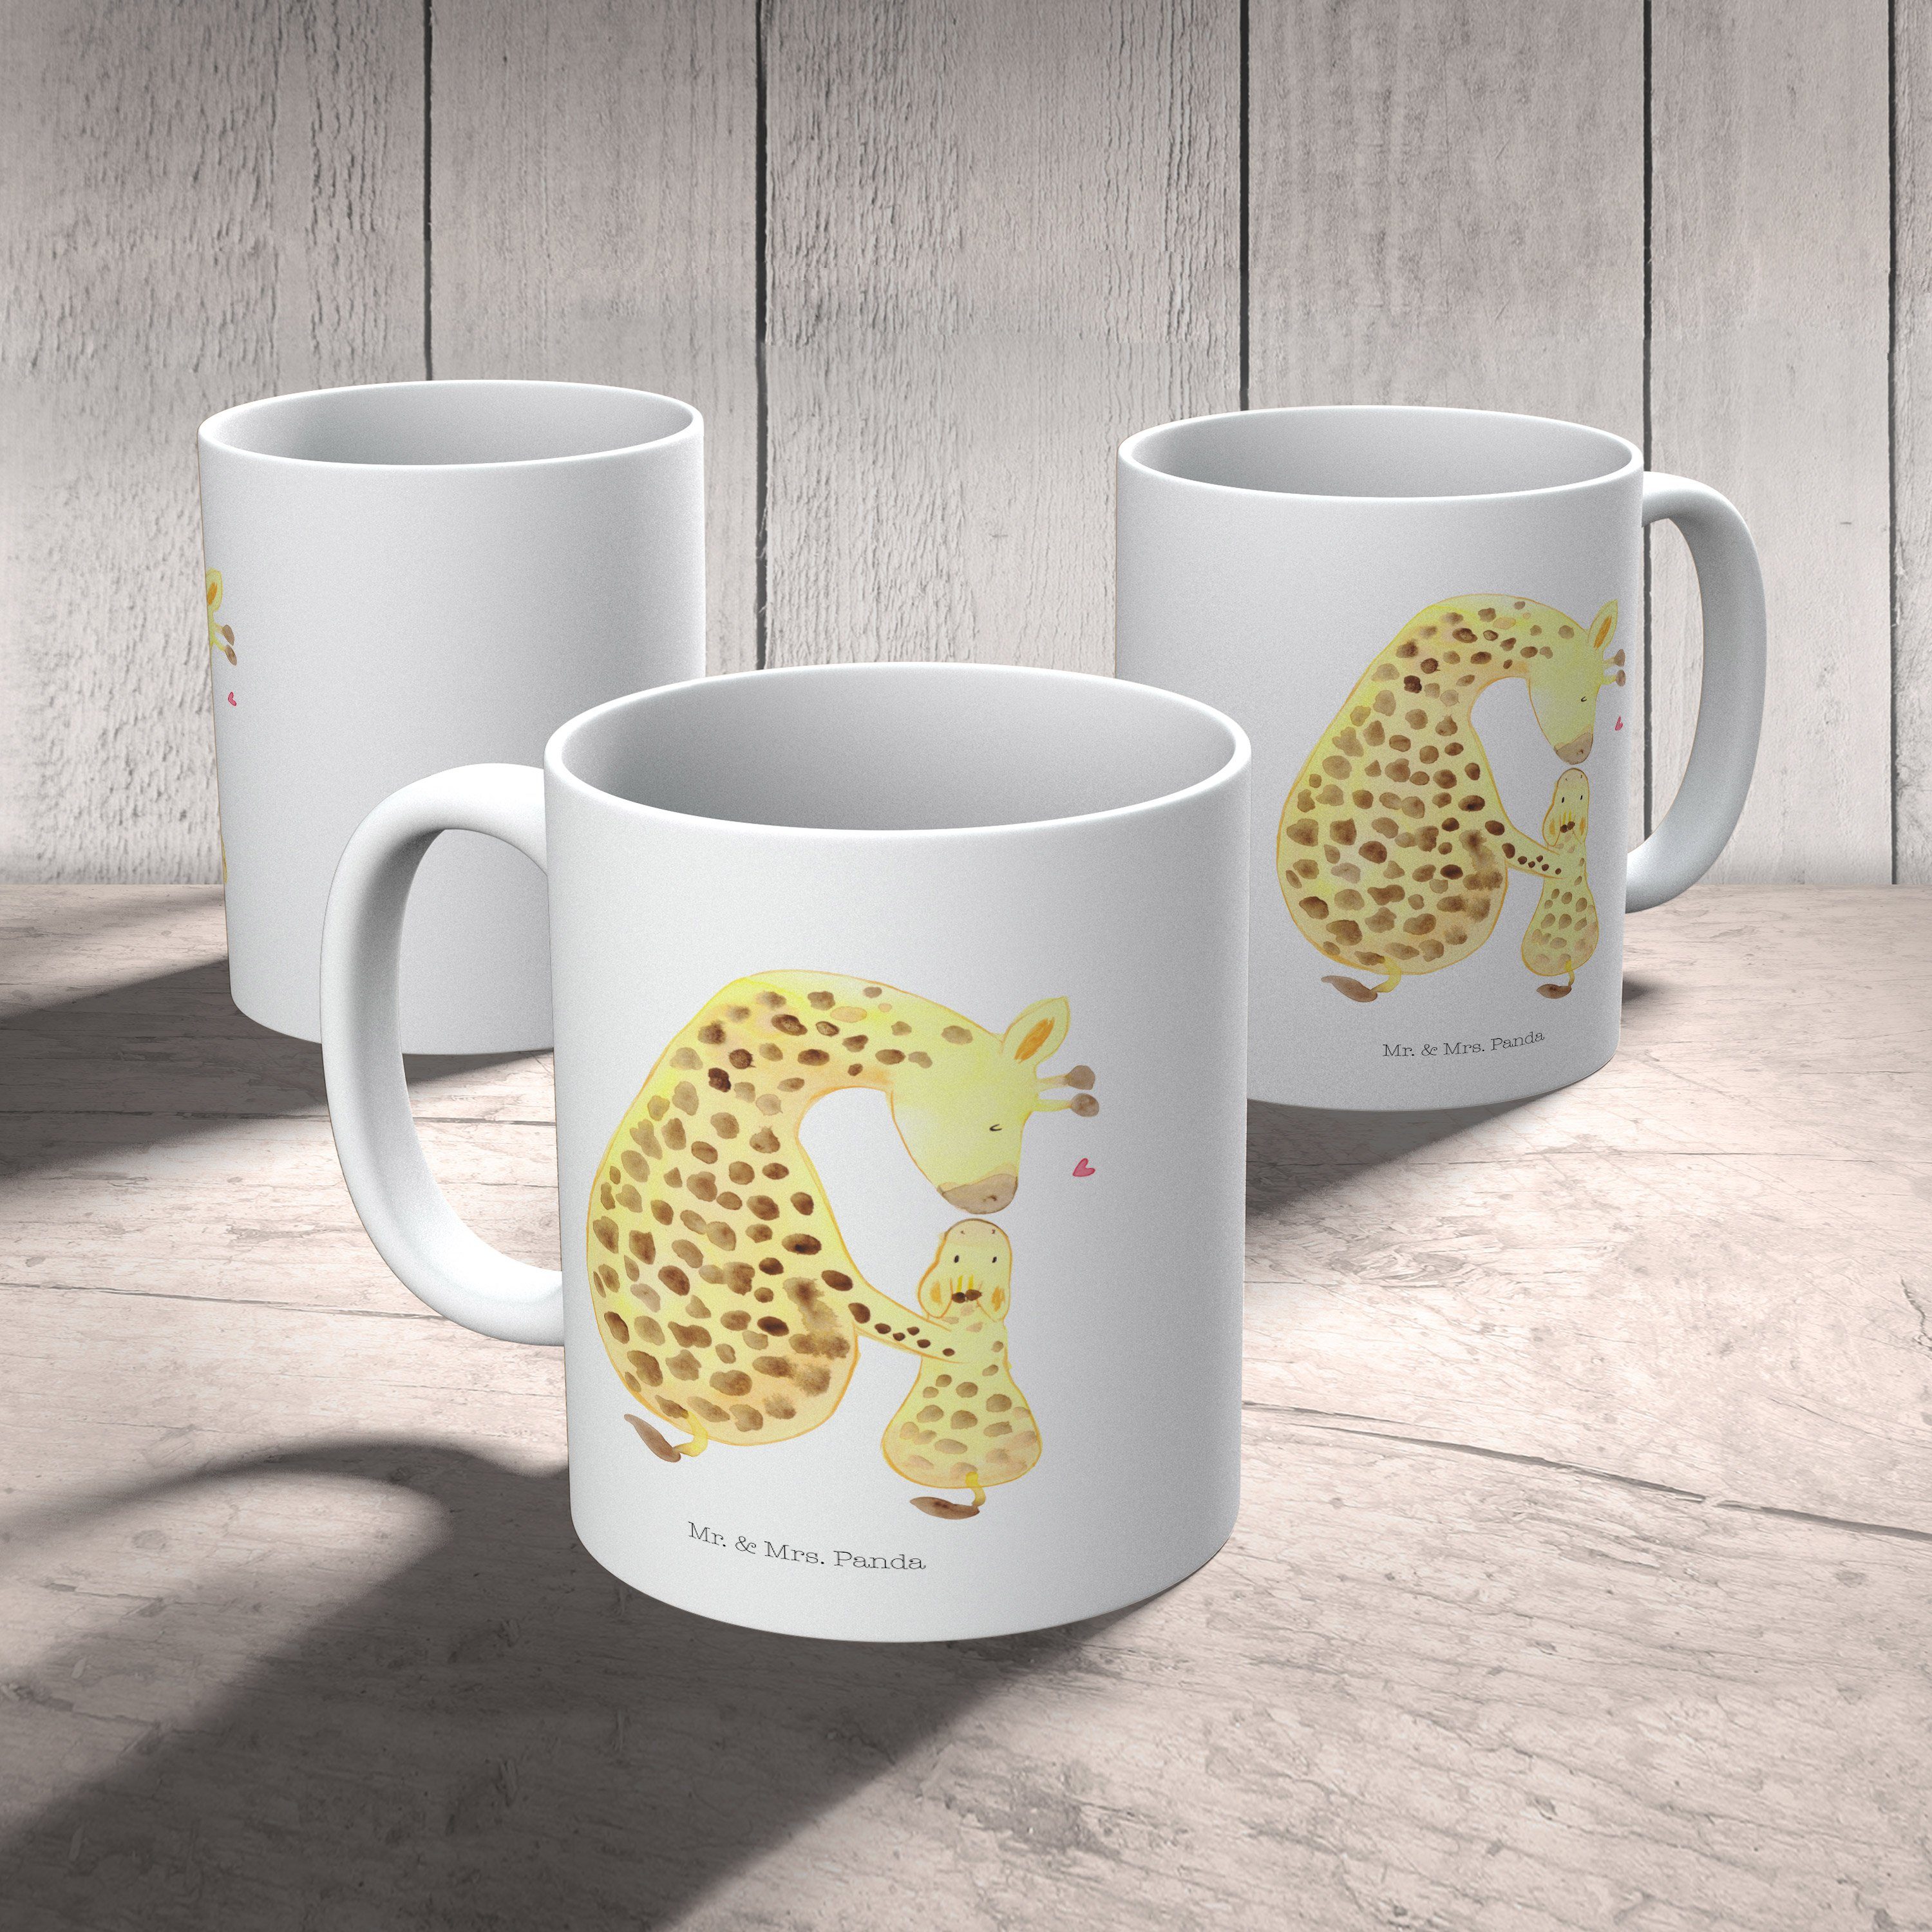 Mr. & Mrs. Kindergarten, Kuns, Geschenk, Kinderbecher - Kind Mutter, - Panda Weiß Giraffe Kunststoff Tasse, mit